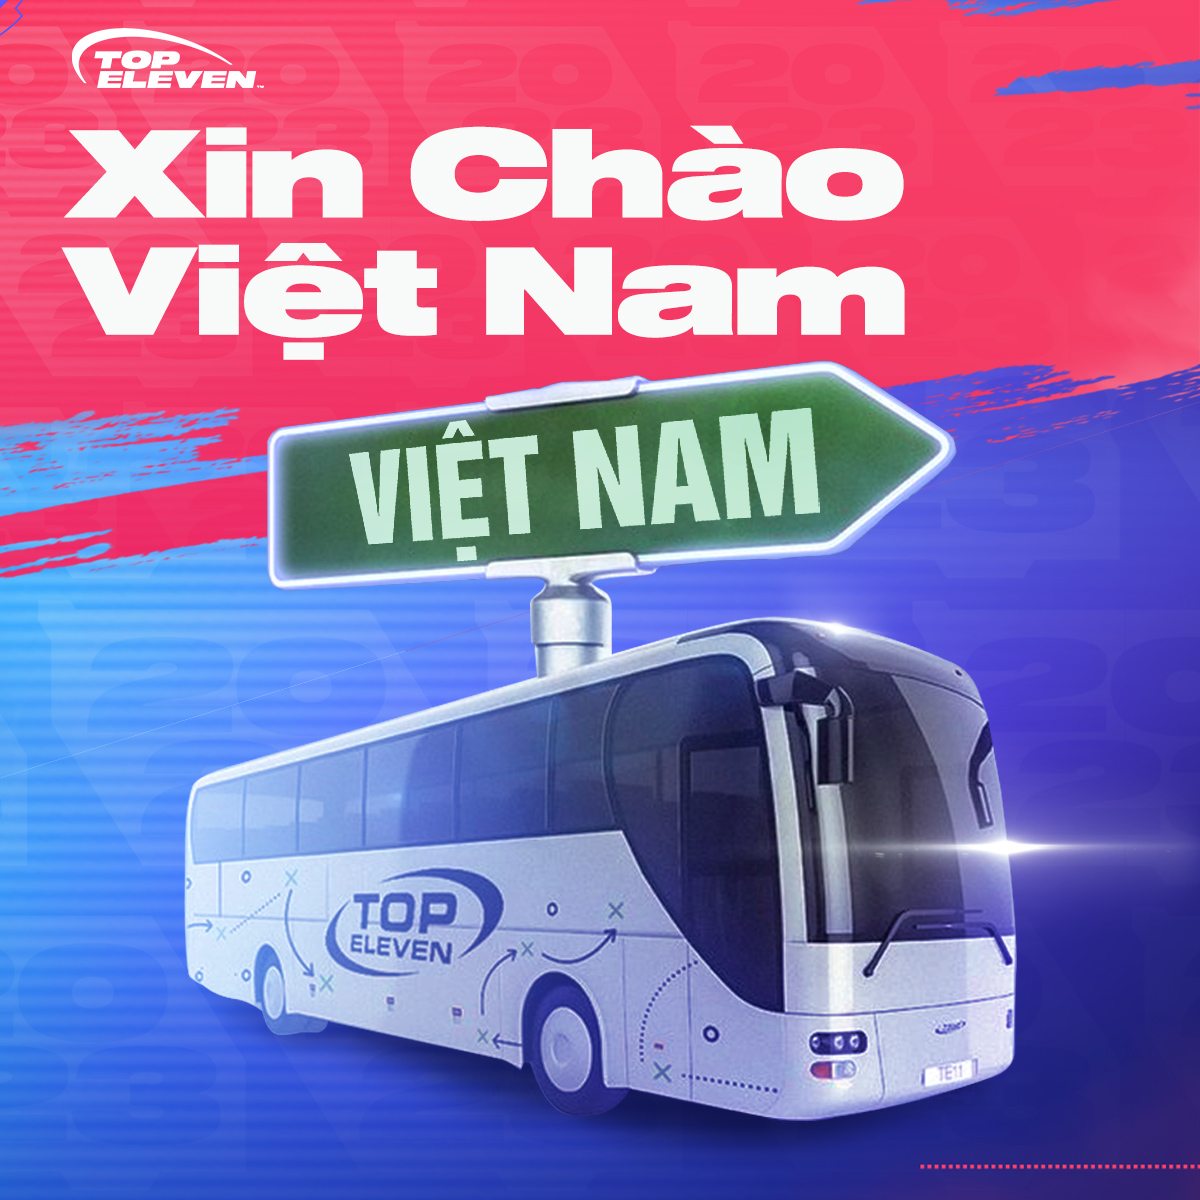 Game quản lý bóng đá Top Eleven sắp có mặt tại Việt Nam, sau 13 năm ra mắt